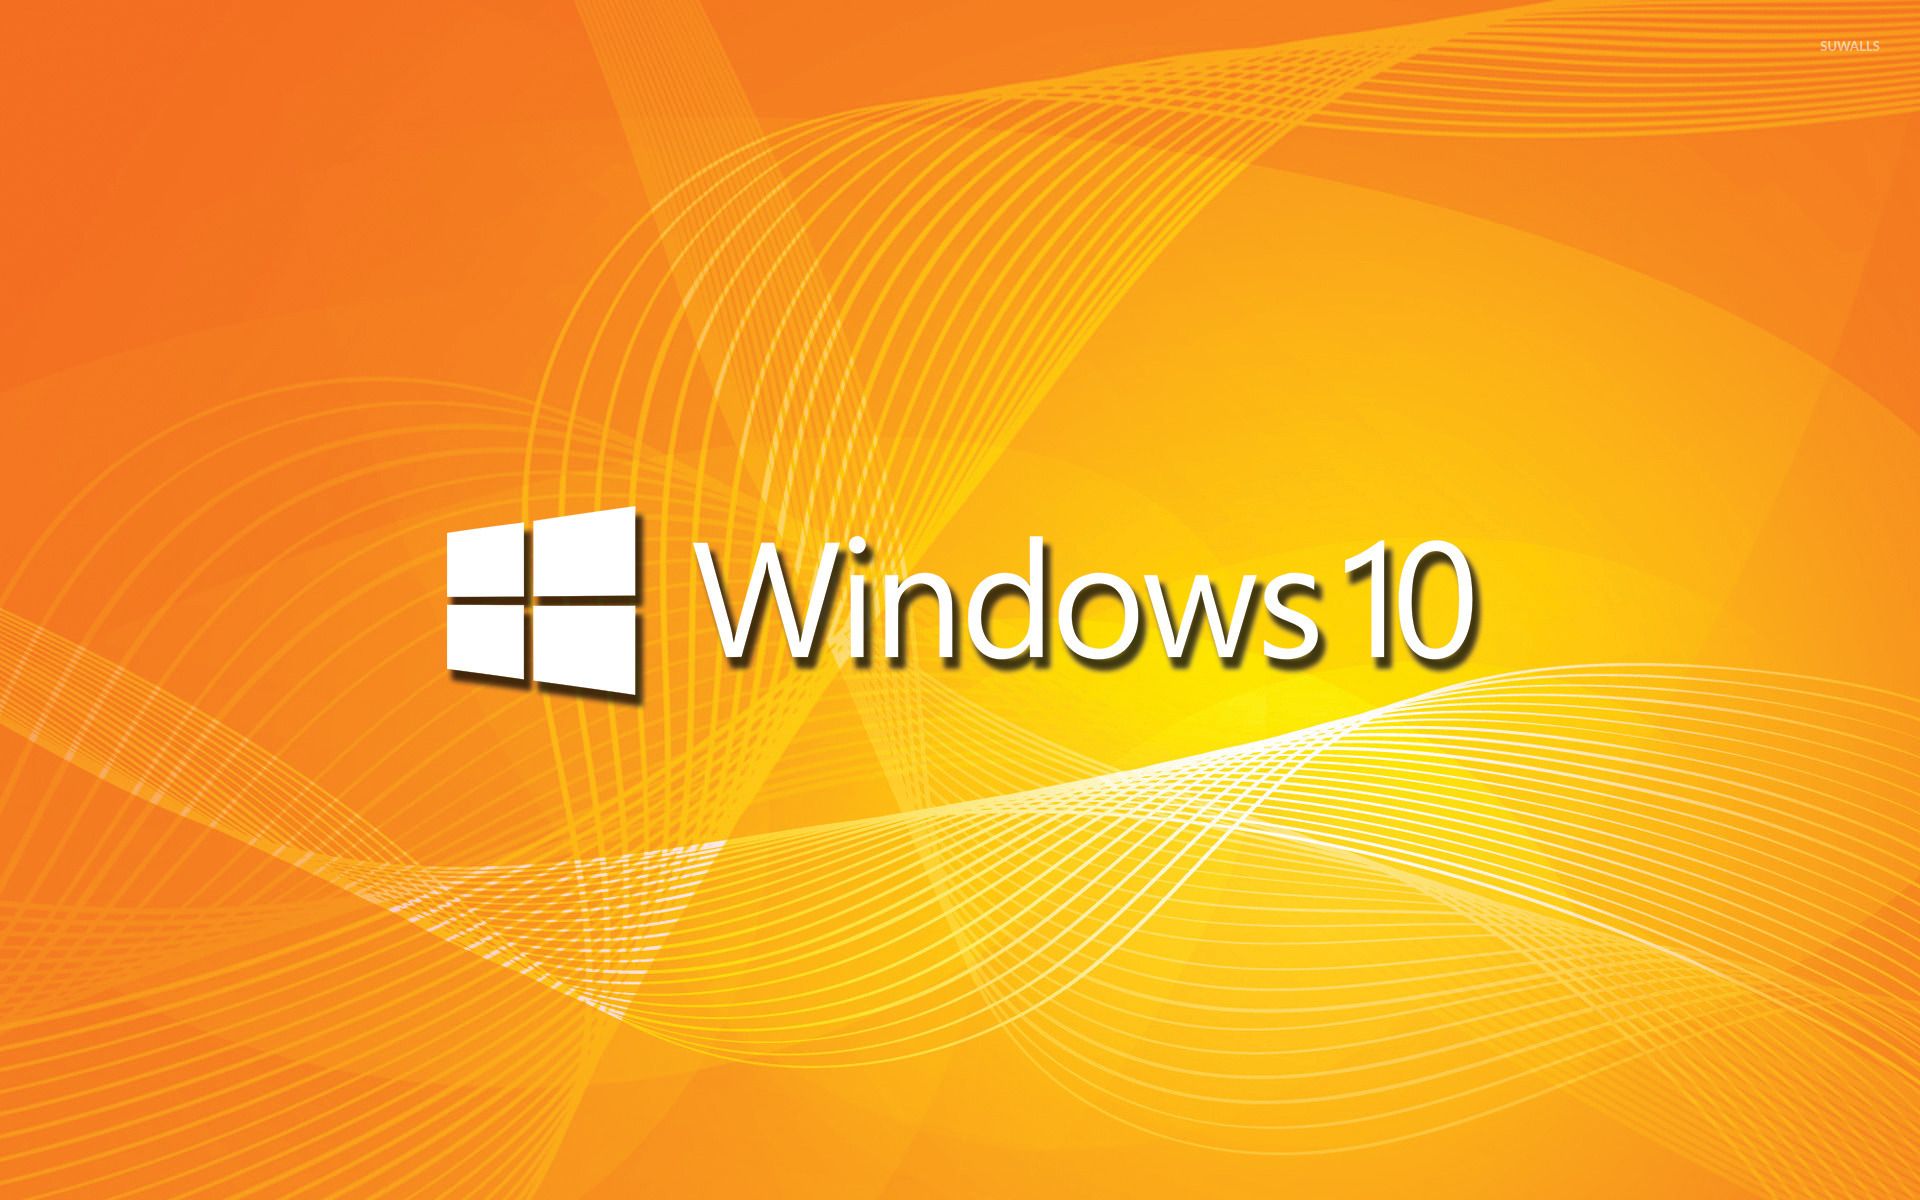 Windows 10 white text logo on orange waves wallpaper